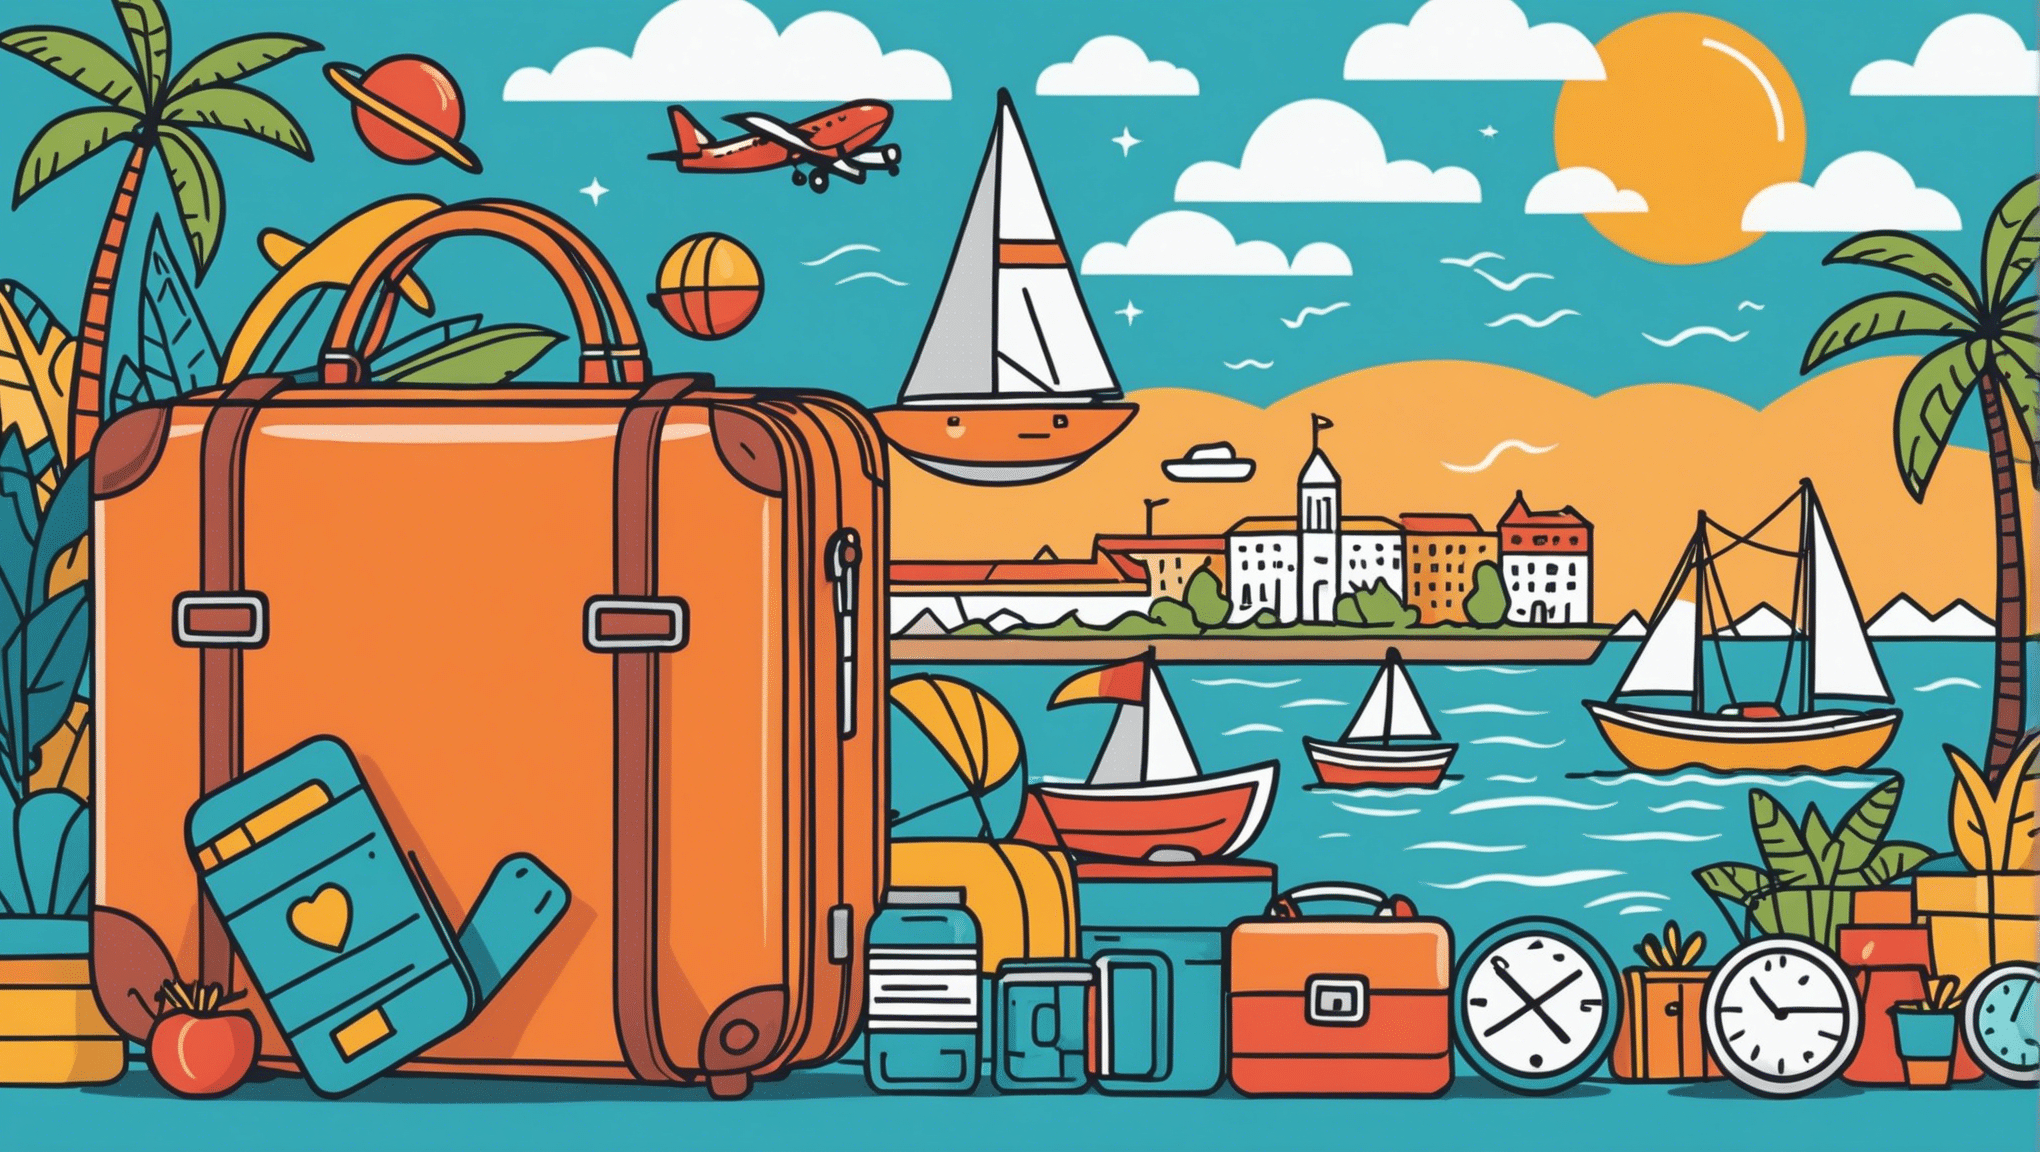 descubra como otimizar seu orçamento de viagem para aproveitar ao máximo seu dinheiro enquanto viaja.